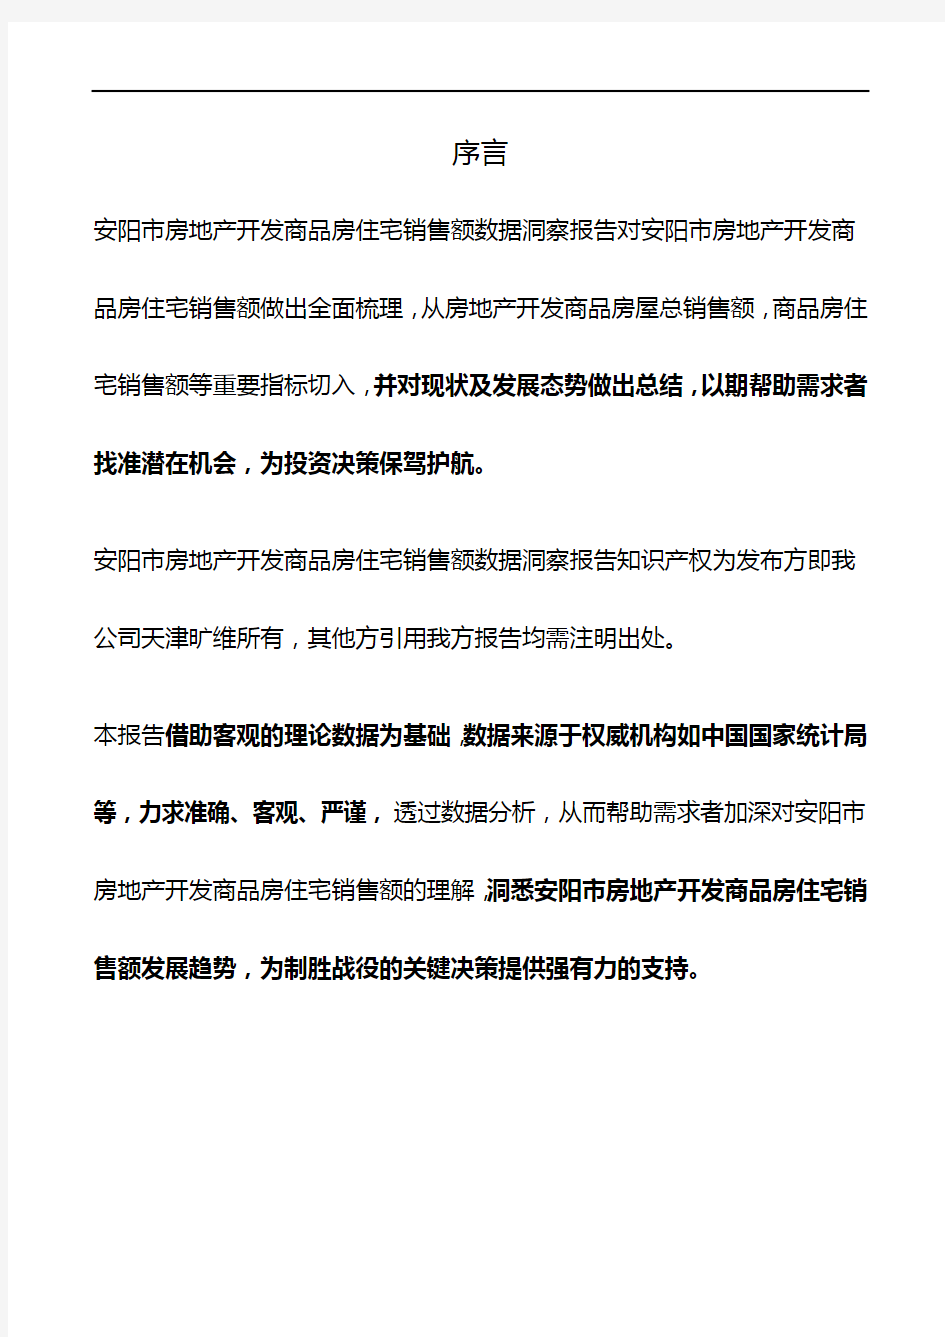 河南省安阳市房地产开发商品房住宅销售额数据洞察报告2019版